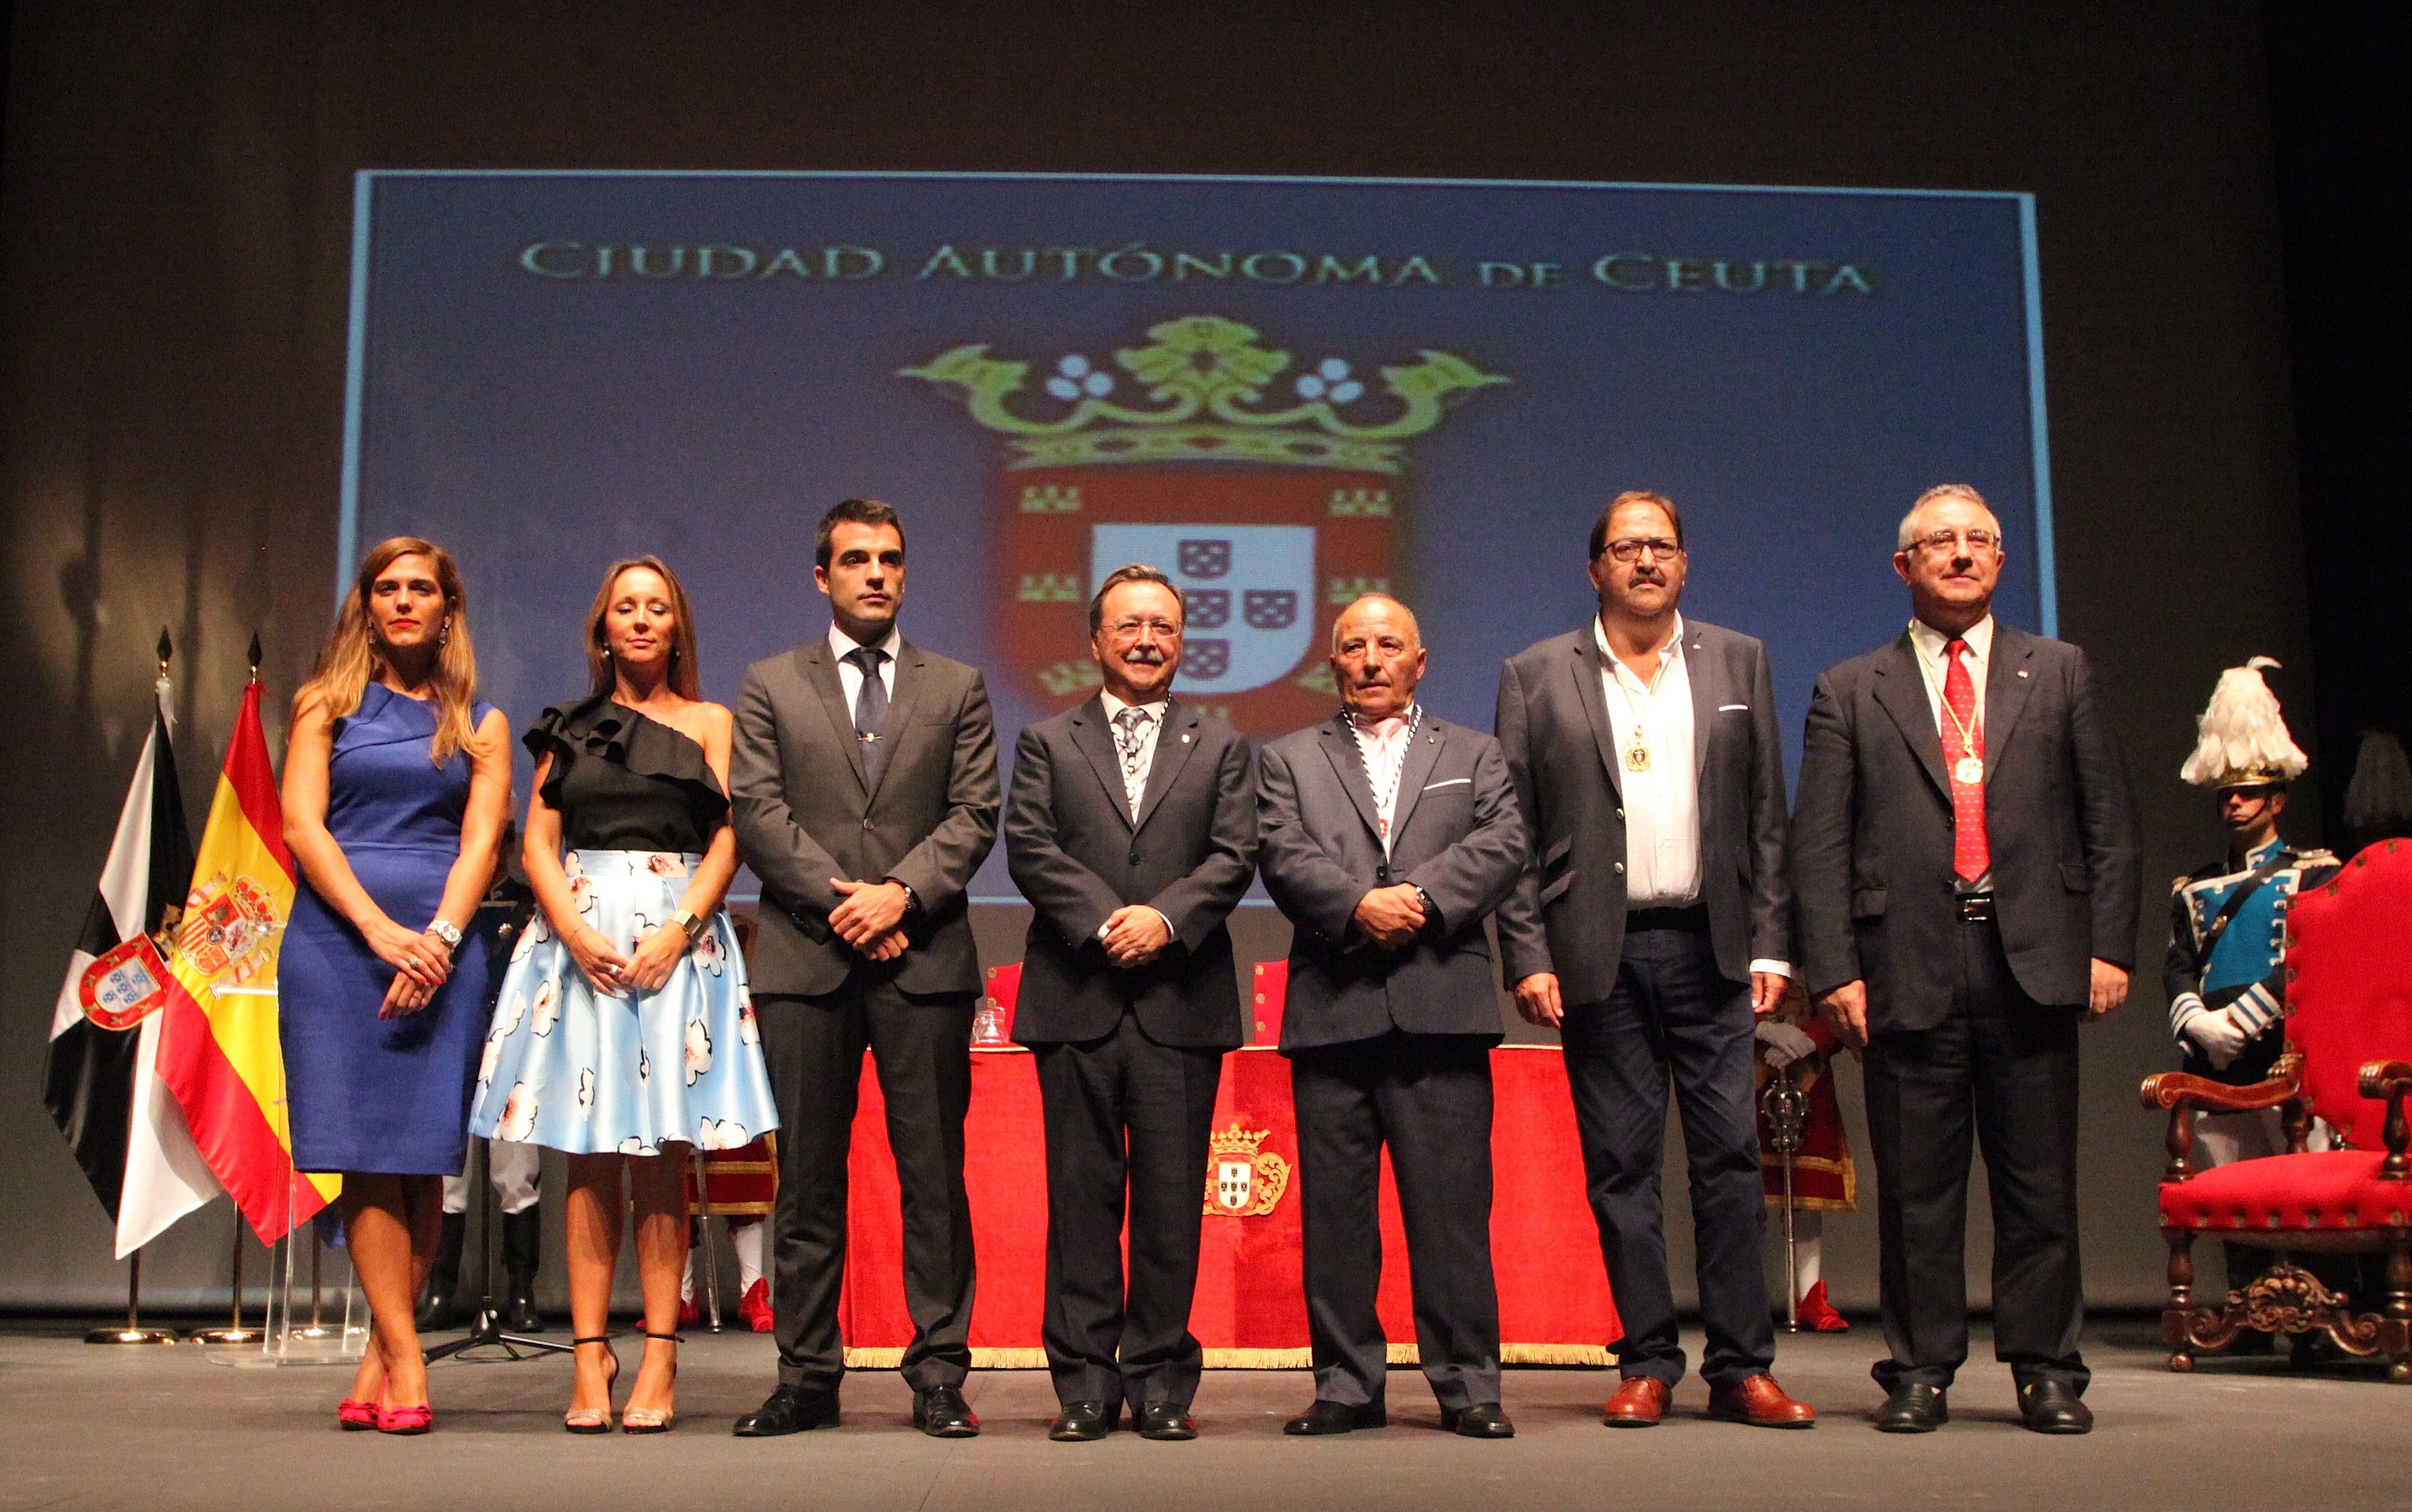 Entrega de la Medalla de la Autonomía al CSA Ceuta por su Centenario